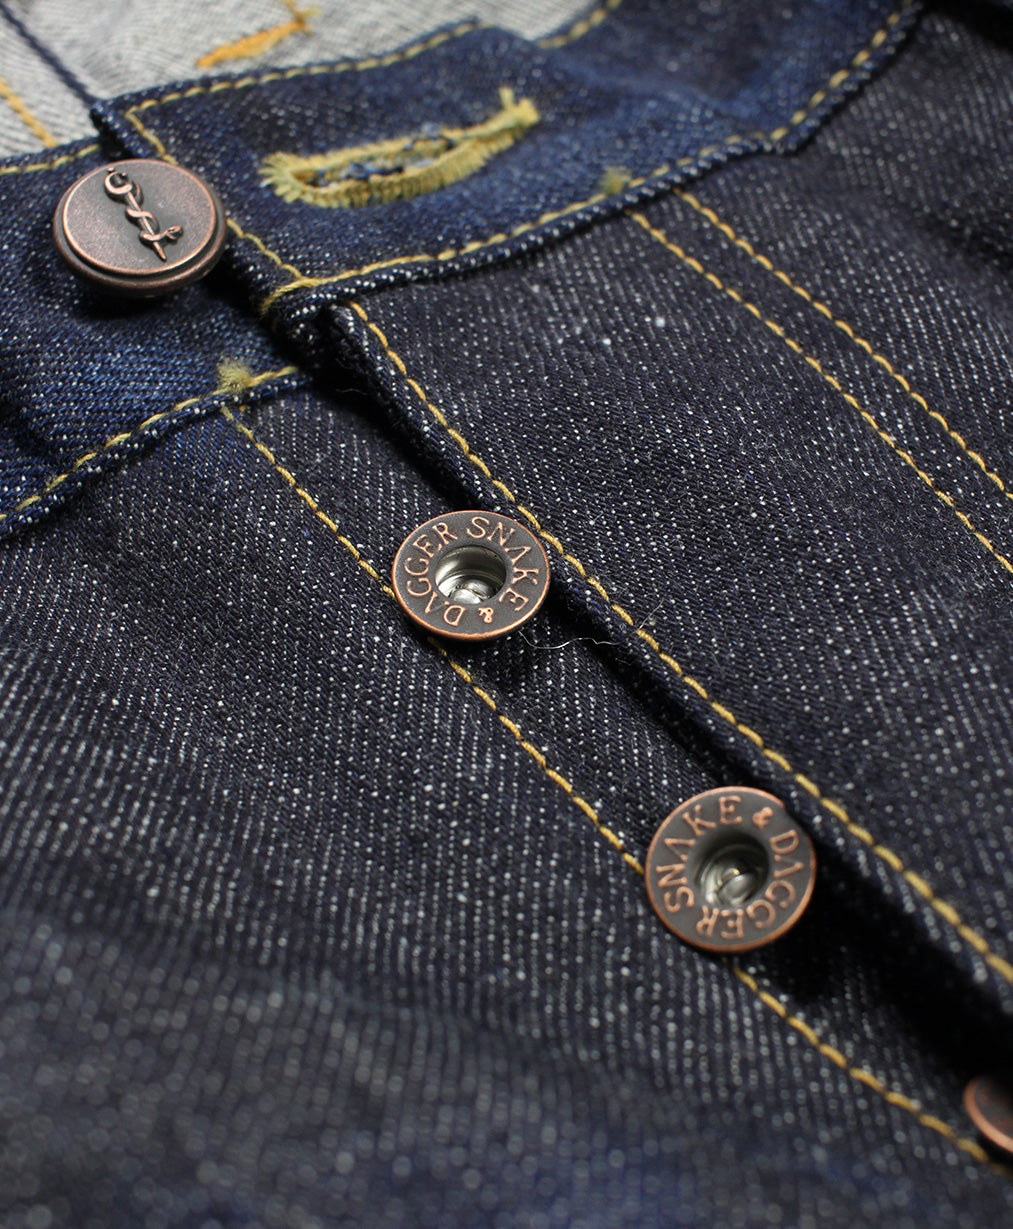 Five Pacer - 12 Month Indigo Denim Jeans